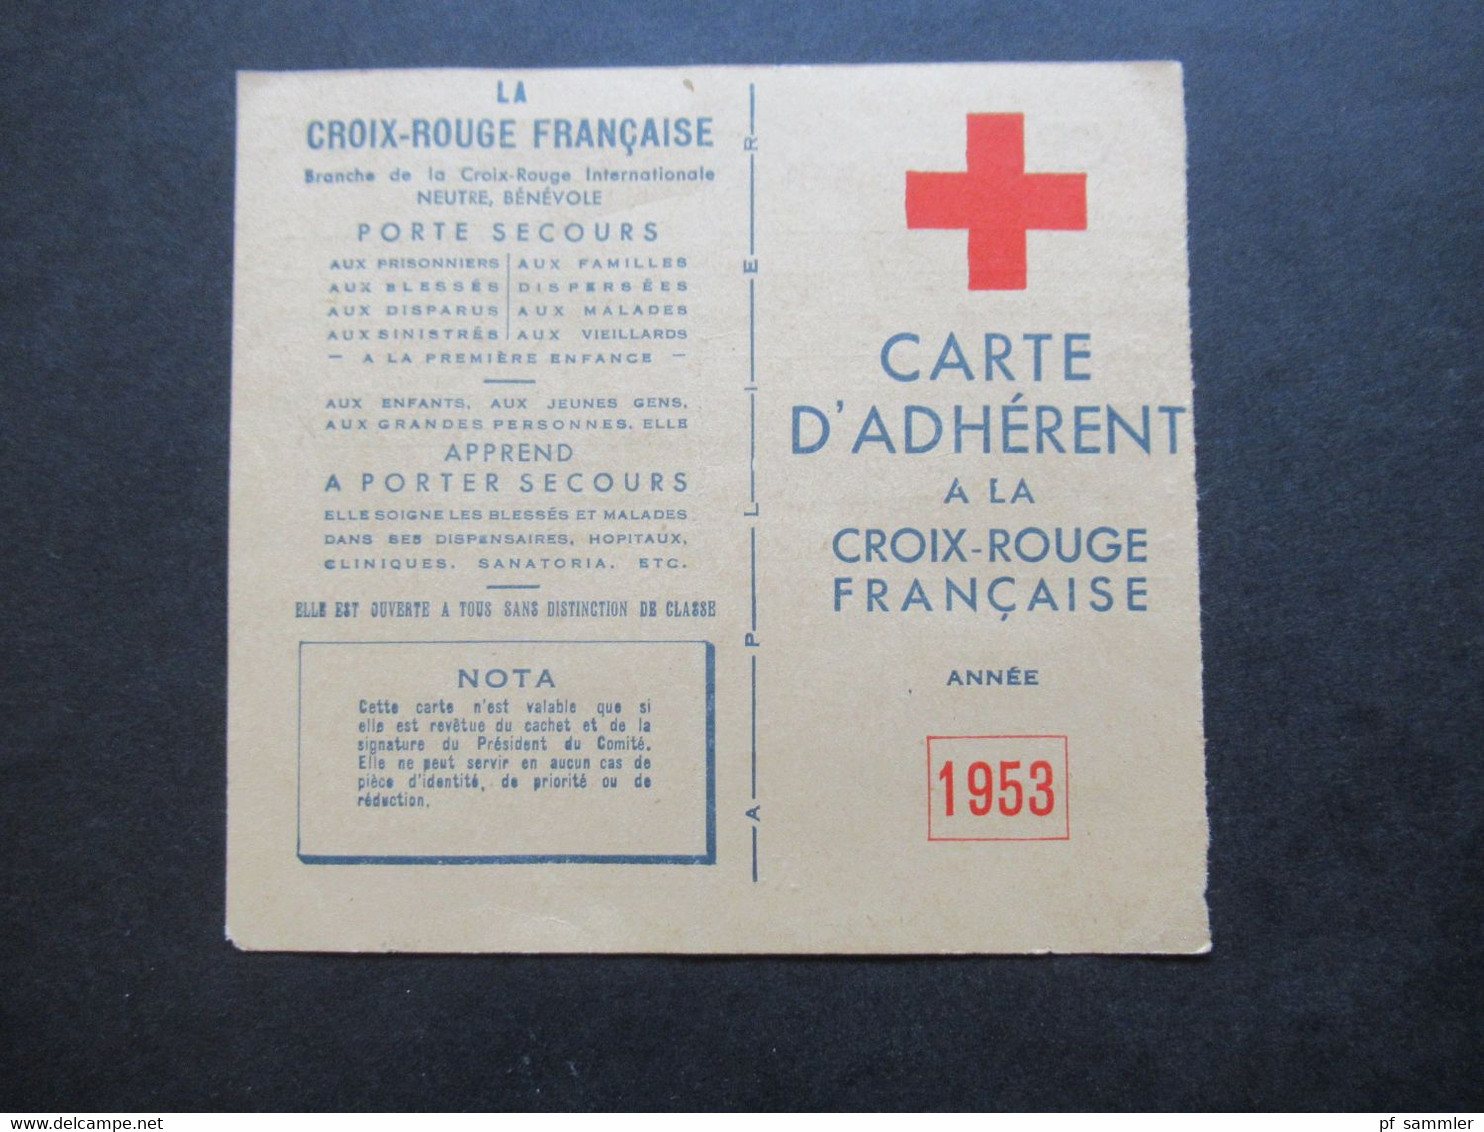 Frankreich 1953 Vignette Auf Carte D'Adherent Croix Rouge Francaise Mit Stempel Und Signe Le President Du Comité - Erinnofilia